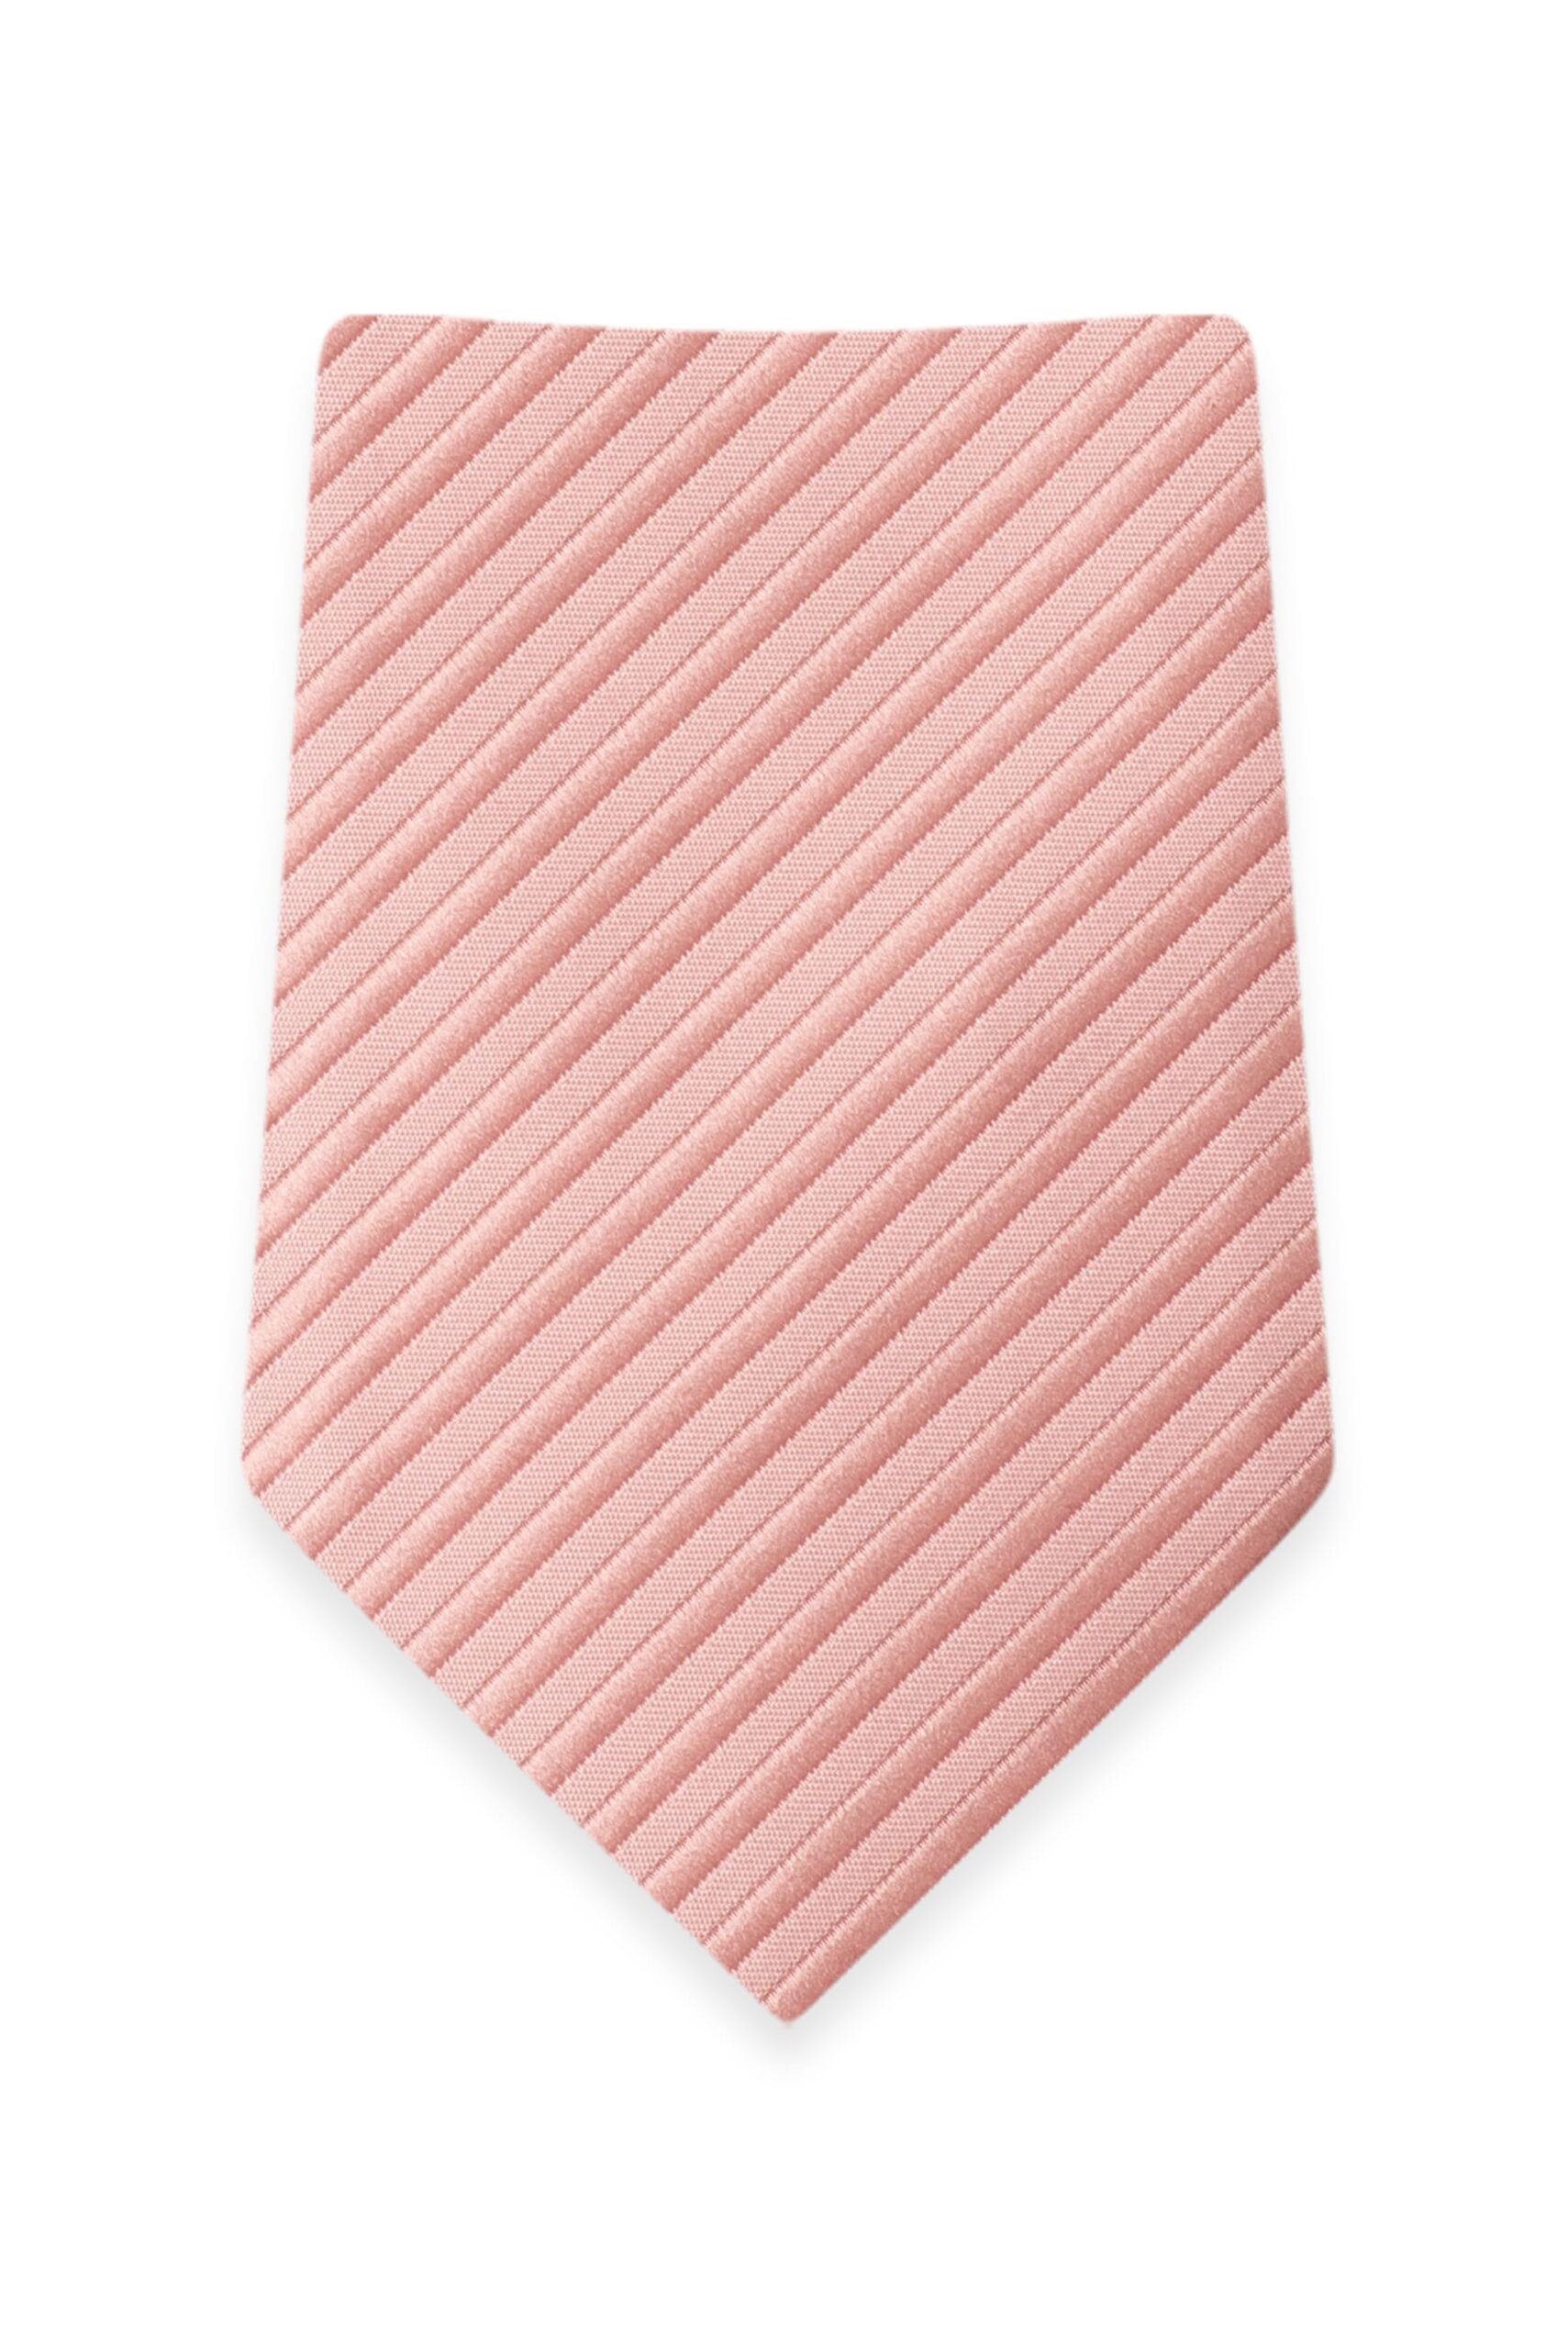 Striped Ballet Self-Tie Windsor Tie